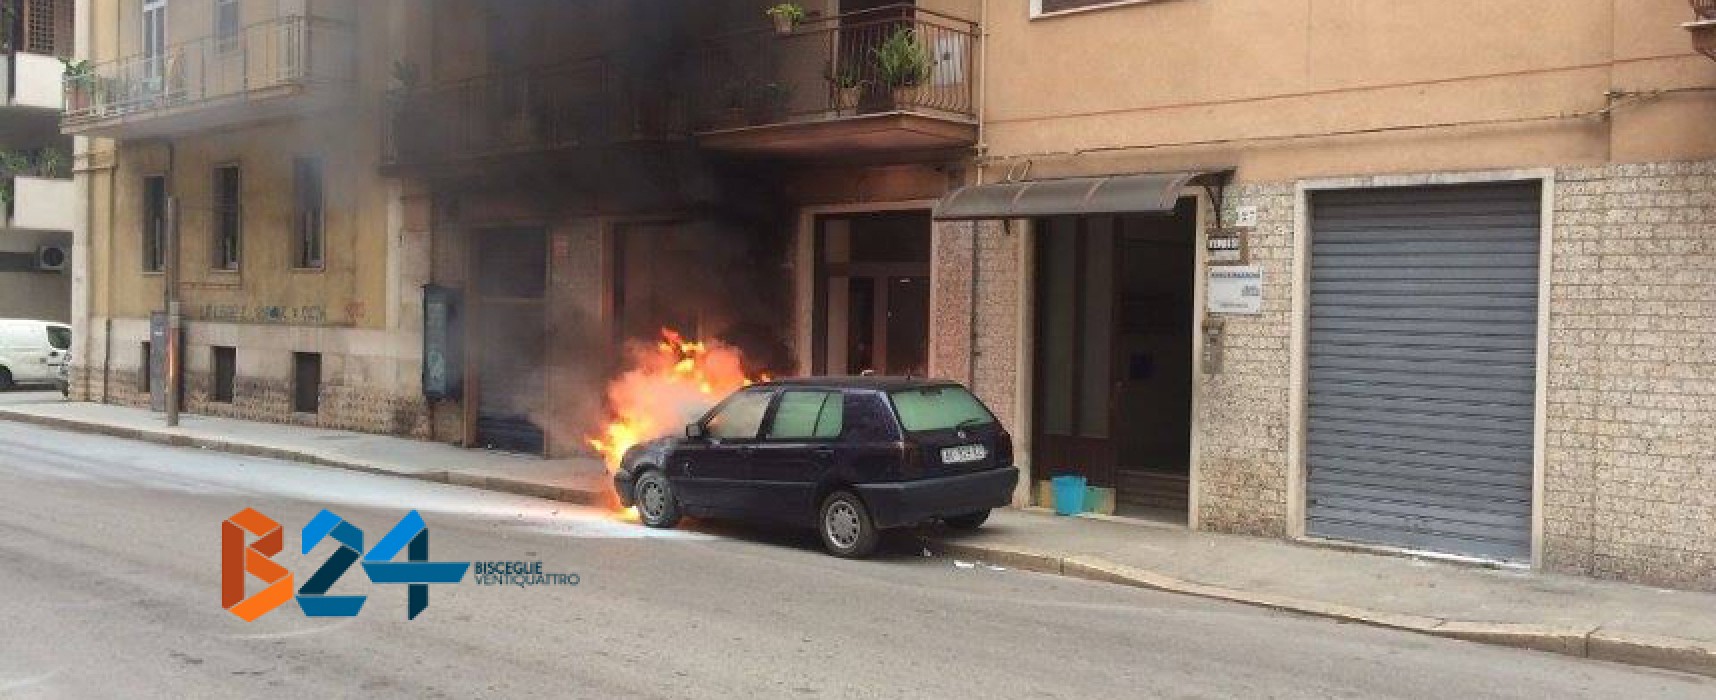 Auto prende fuoco in via Piave, nessun ferito / FOTO